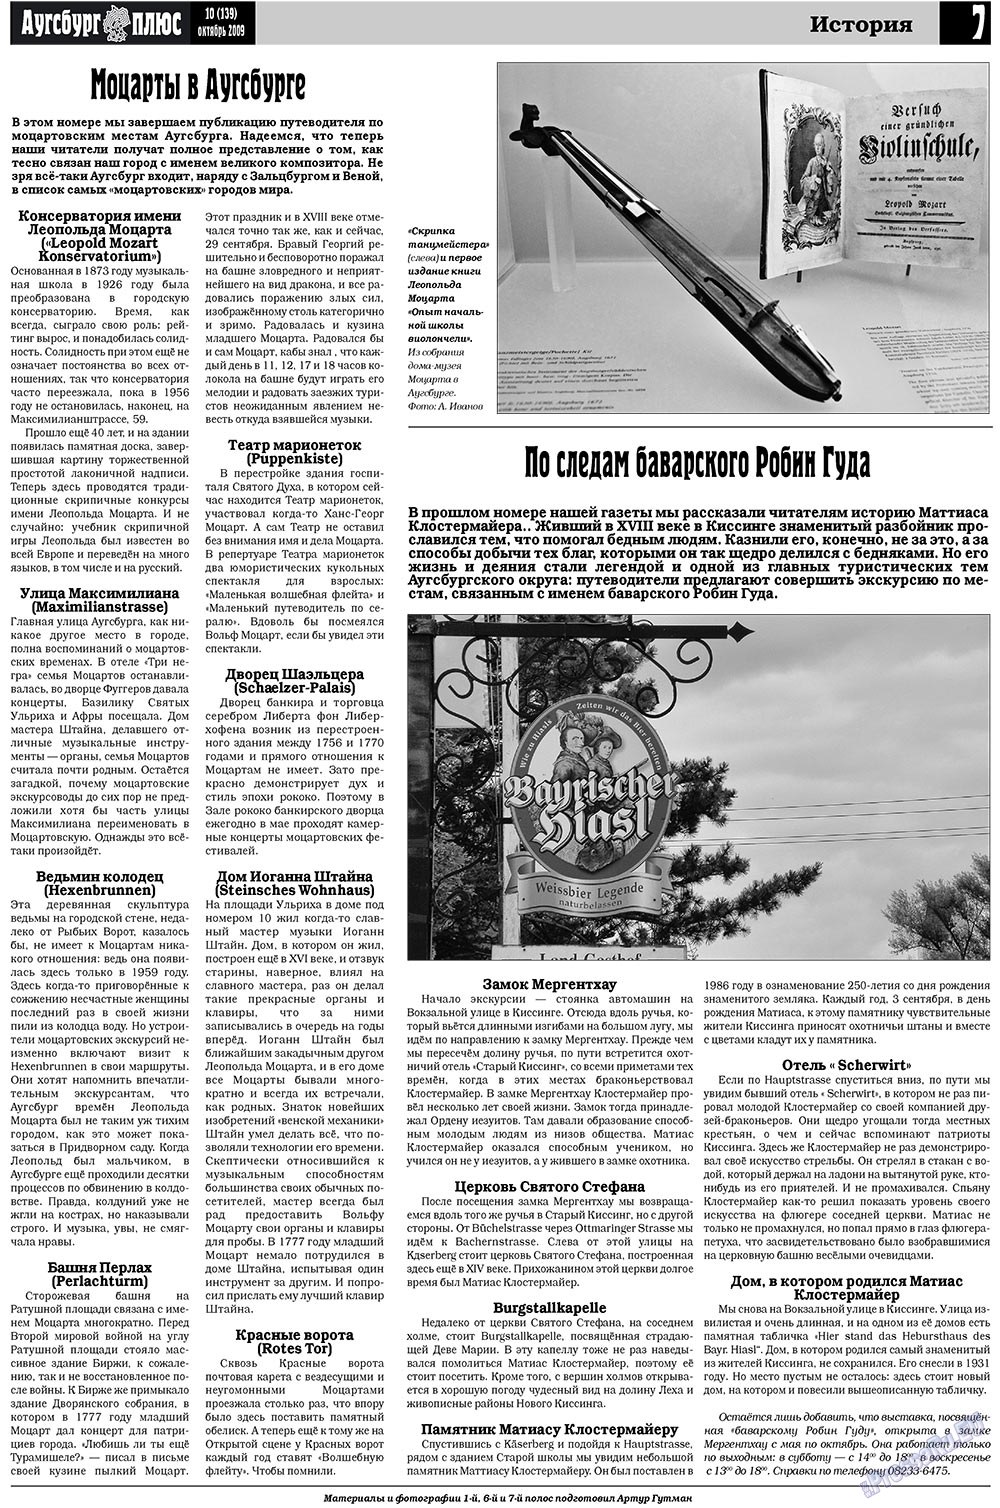 Германия плюс (газета). 2009 год, номер 10, стр. 23